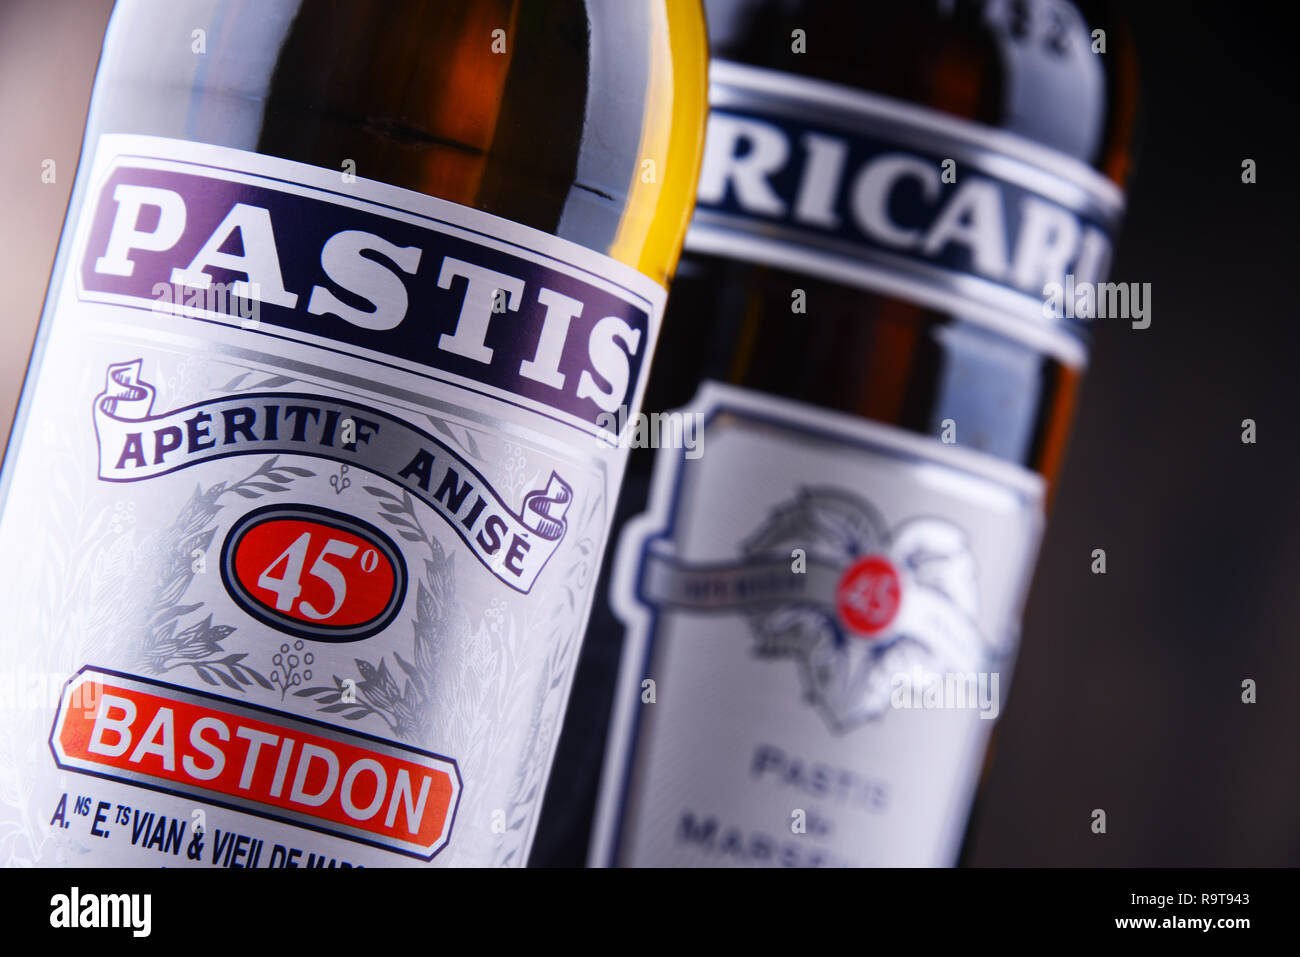 POZNAN, POL - 8 agosto 2018: bottiglie di due famosi pastis liquori: Ricard e Pastis, anice e liquirizia-Aperitivi aromatizzati. Foto Stock